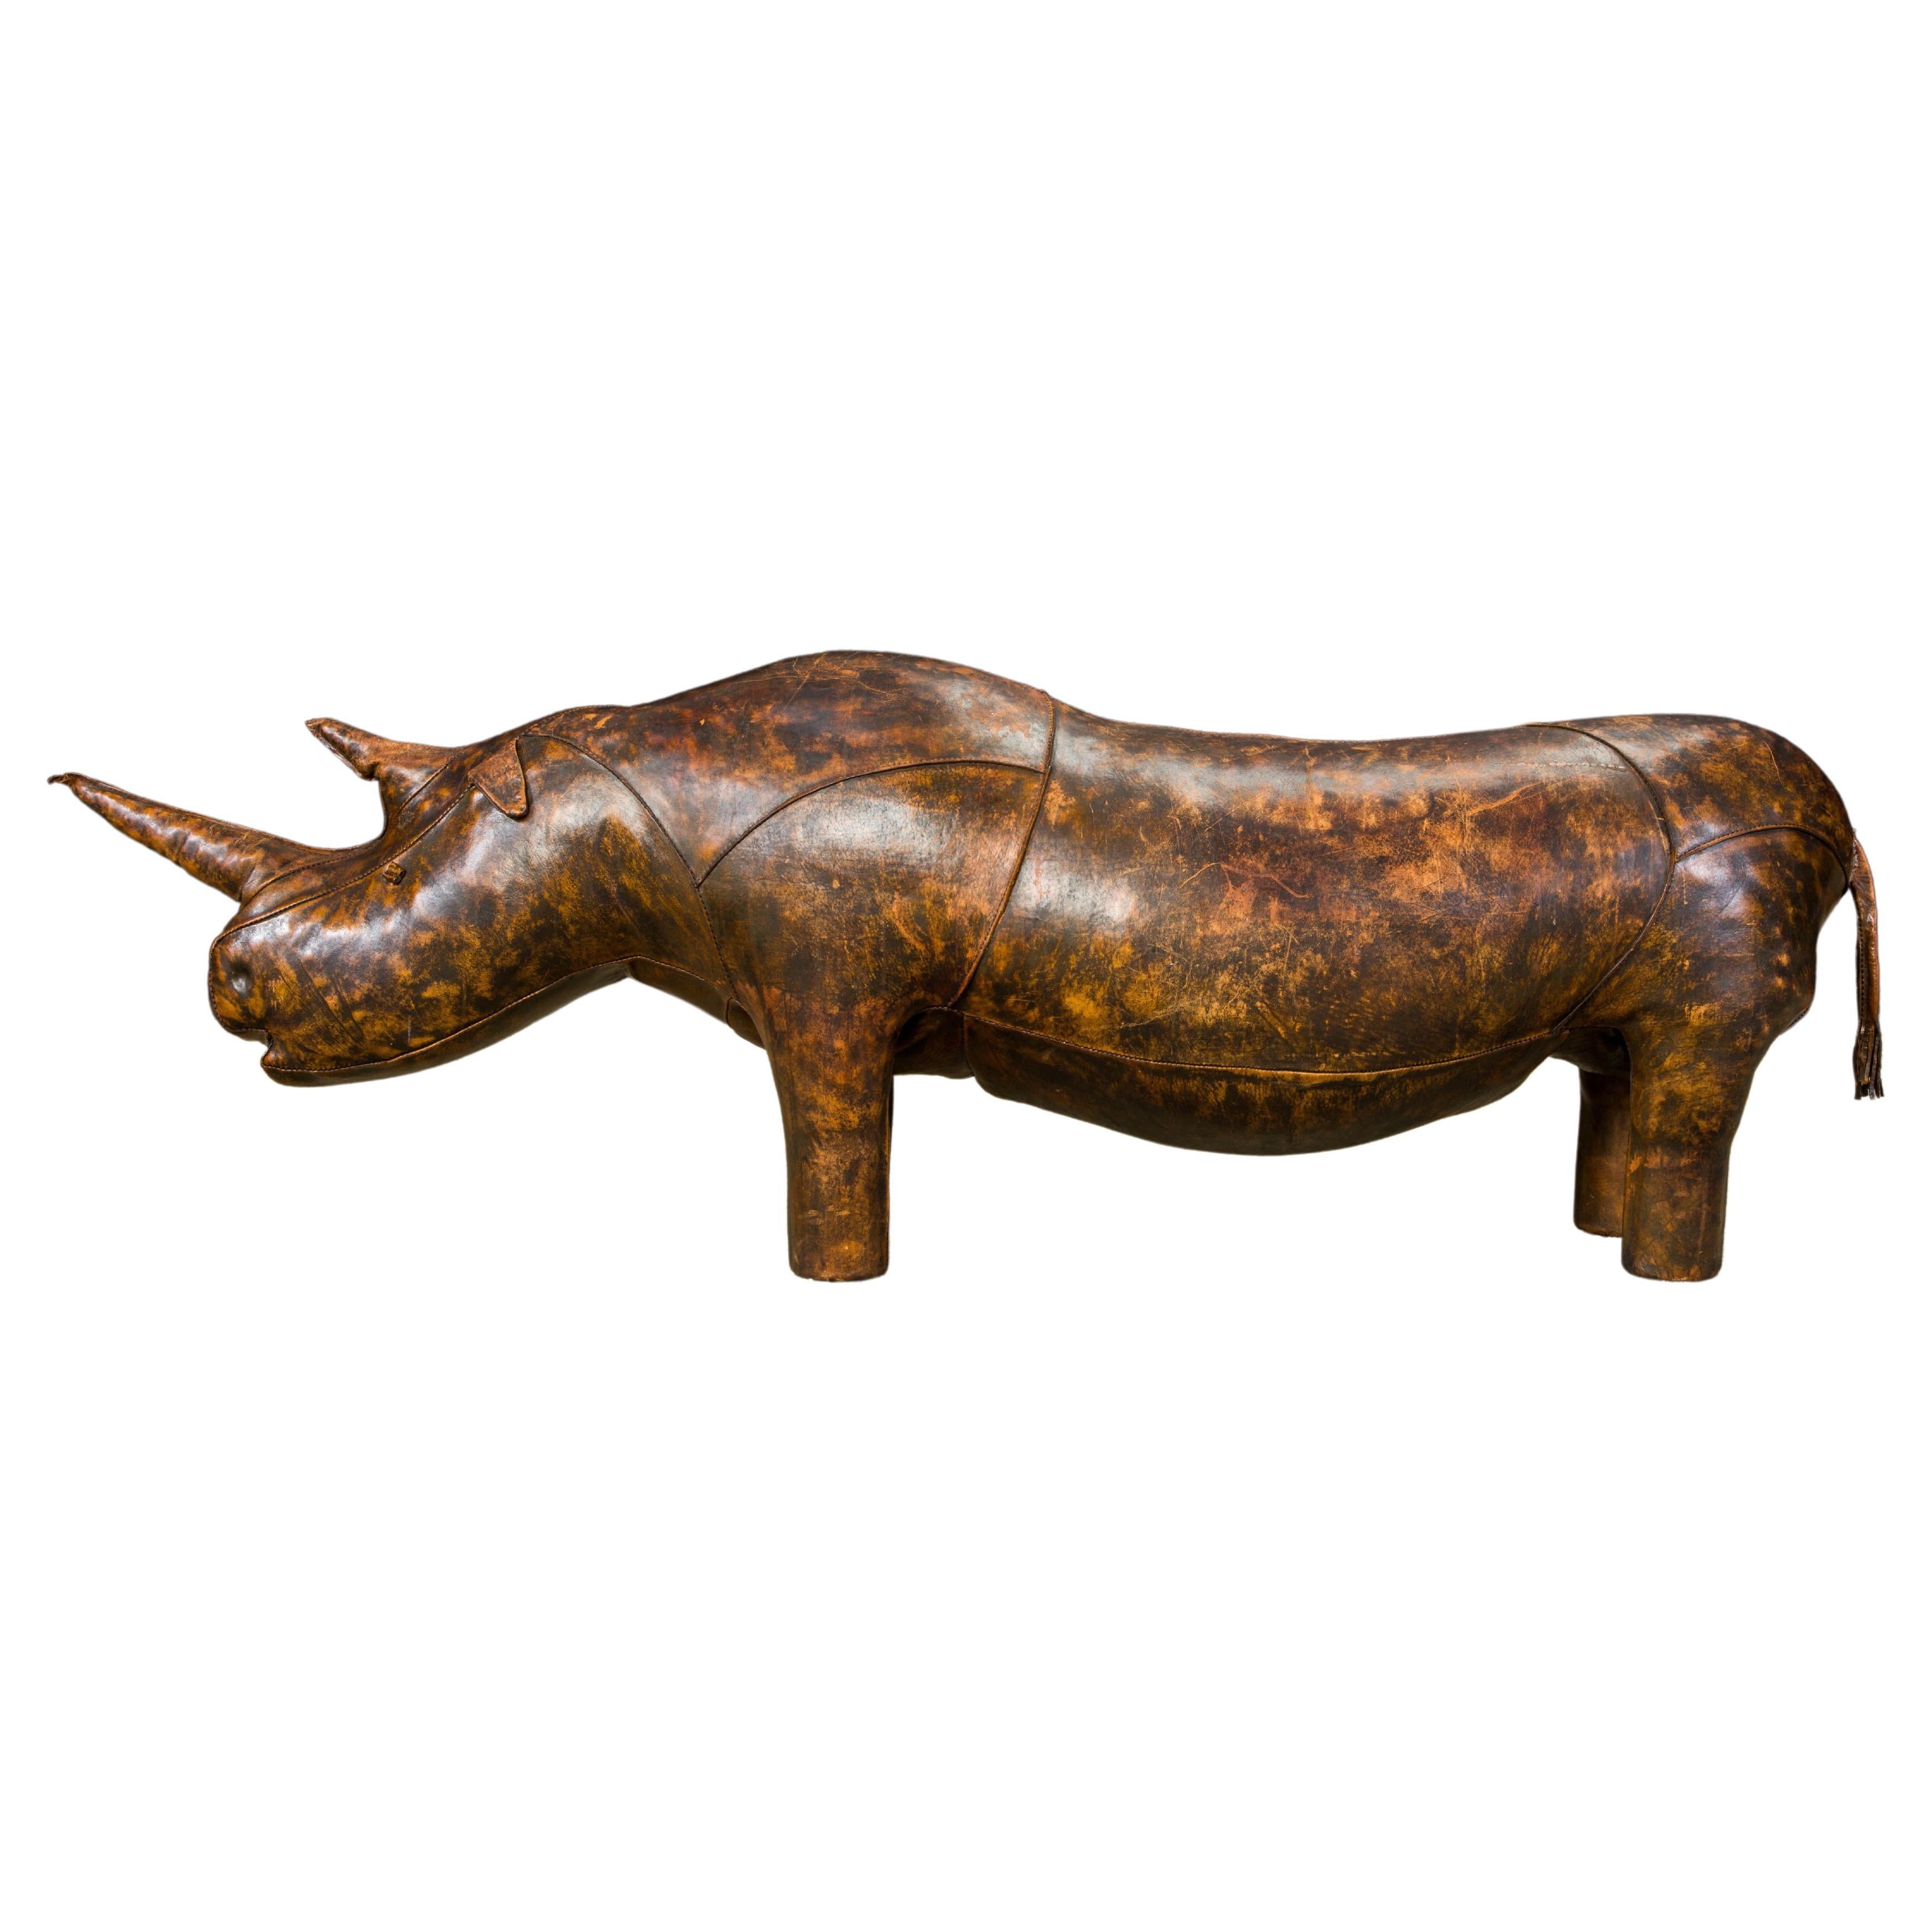 77"" Leder 'Superking' Rhino von Dimitri Omersa für Abercrombie & Fitch, signiert